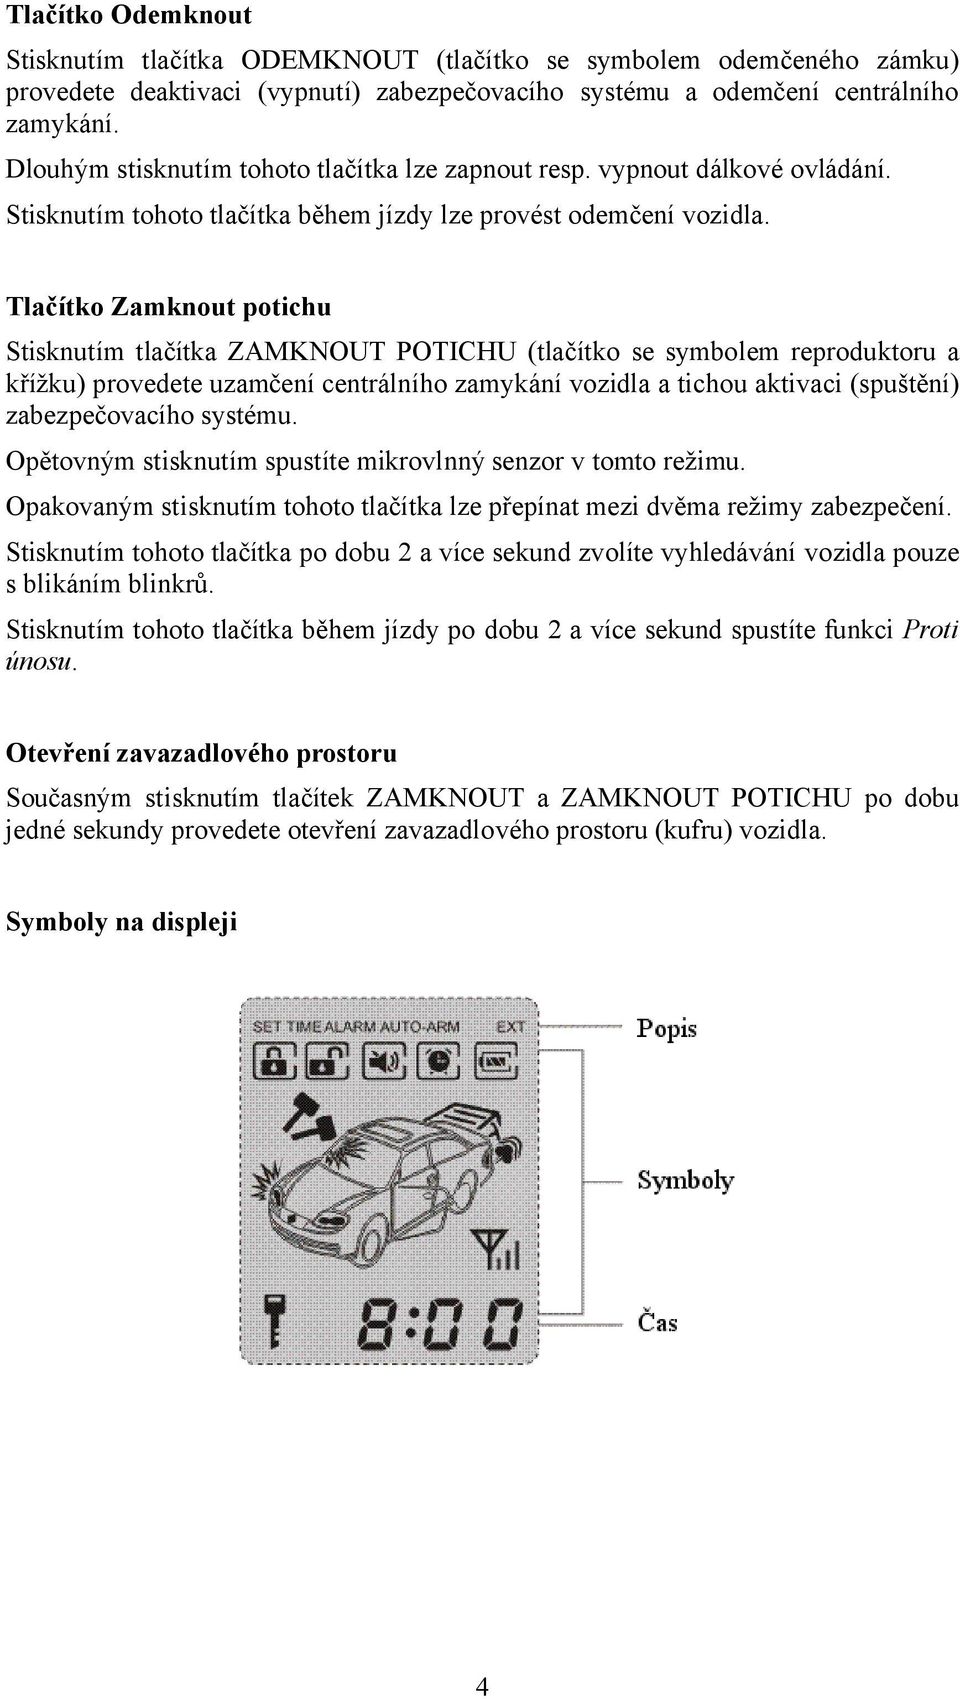 Tlačítko Zamknout potichu Stisknutím tlačítka ZAMKNOUT POTICHU (tlačítko se symbolem reproduktoru a křížku) provedete uzamčení centrálního zamykání vozidla a tichou aktivaci (spuštění)